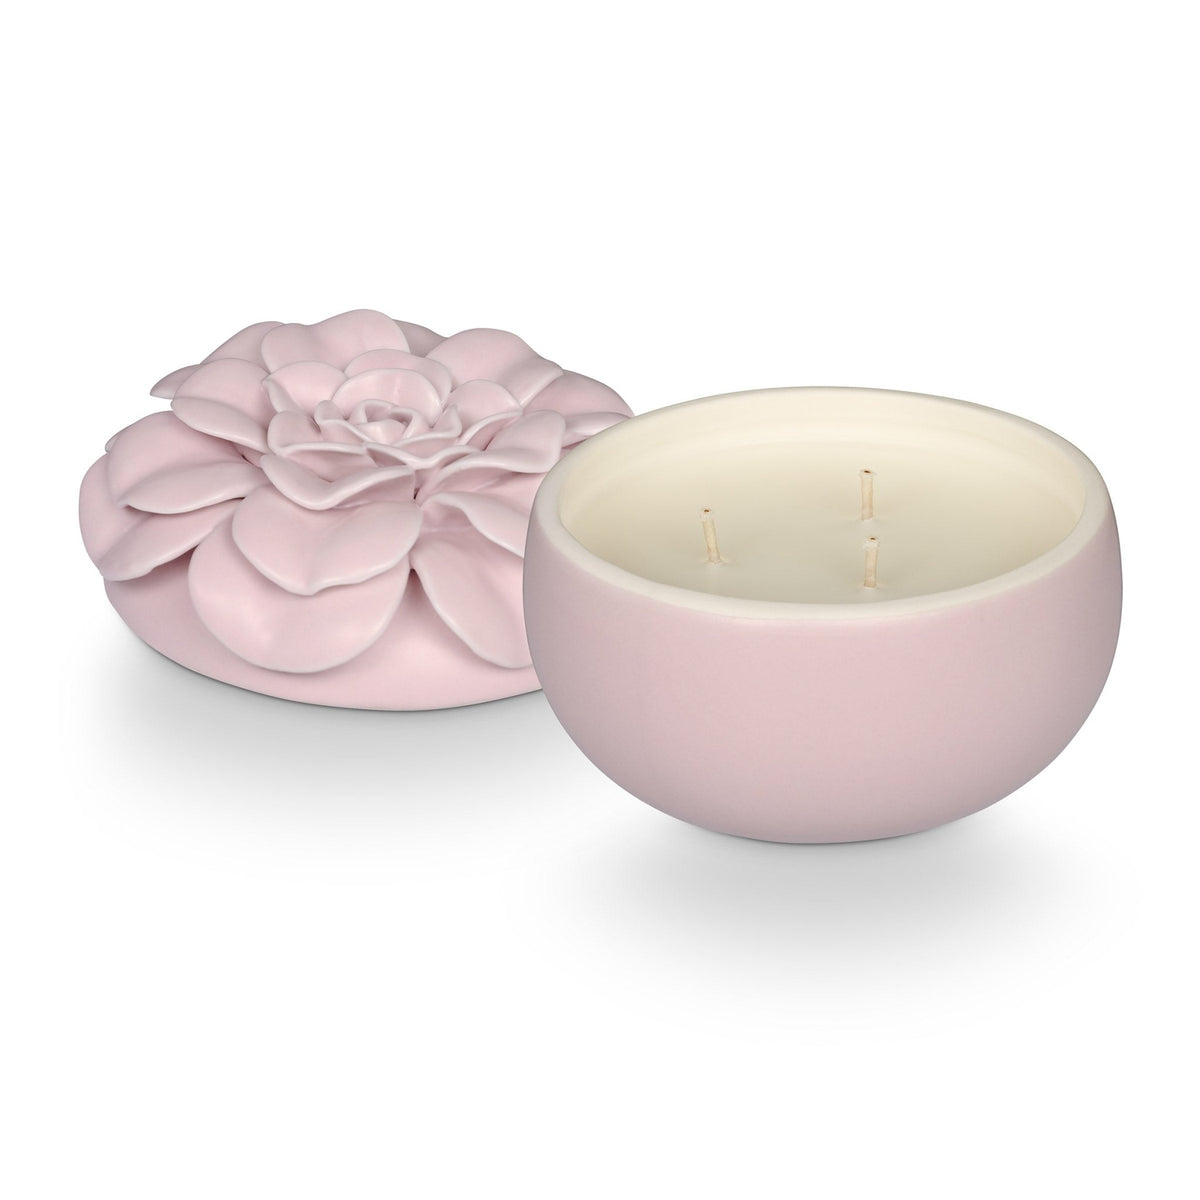 Lavender La La Candle– Flower Ceramic Candles Illume